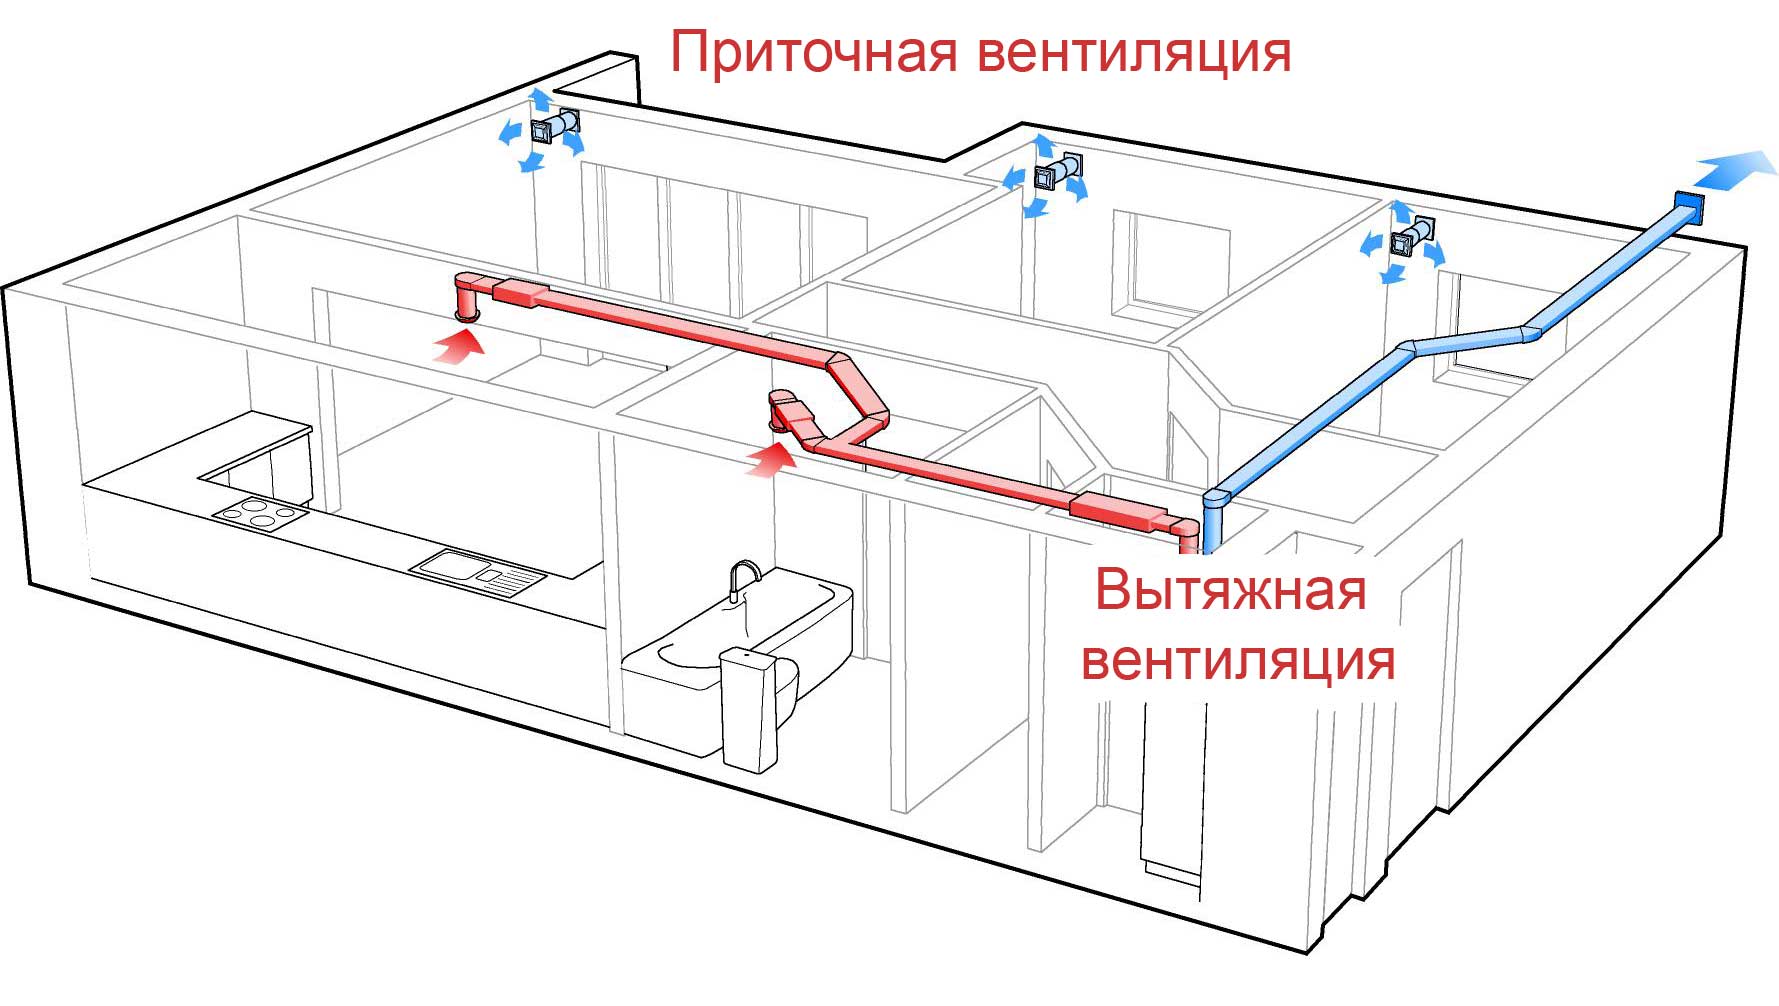 Ventilation til en gaskedel i et privat hus: arrangementsregler og installationsmetoder